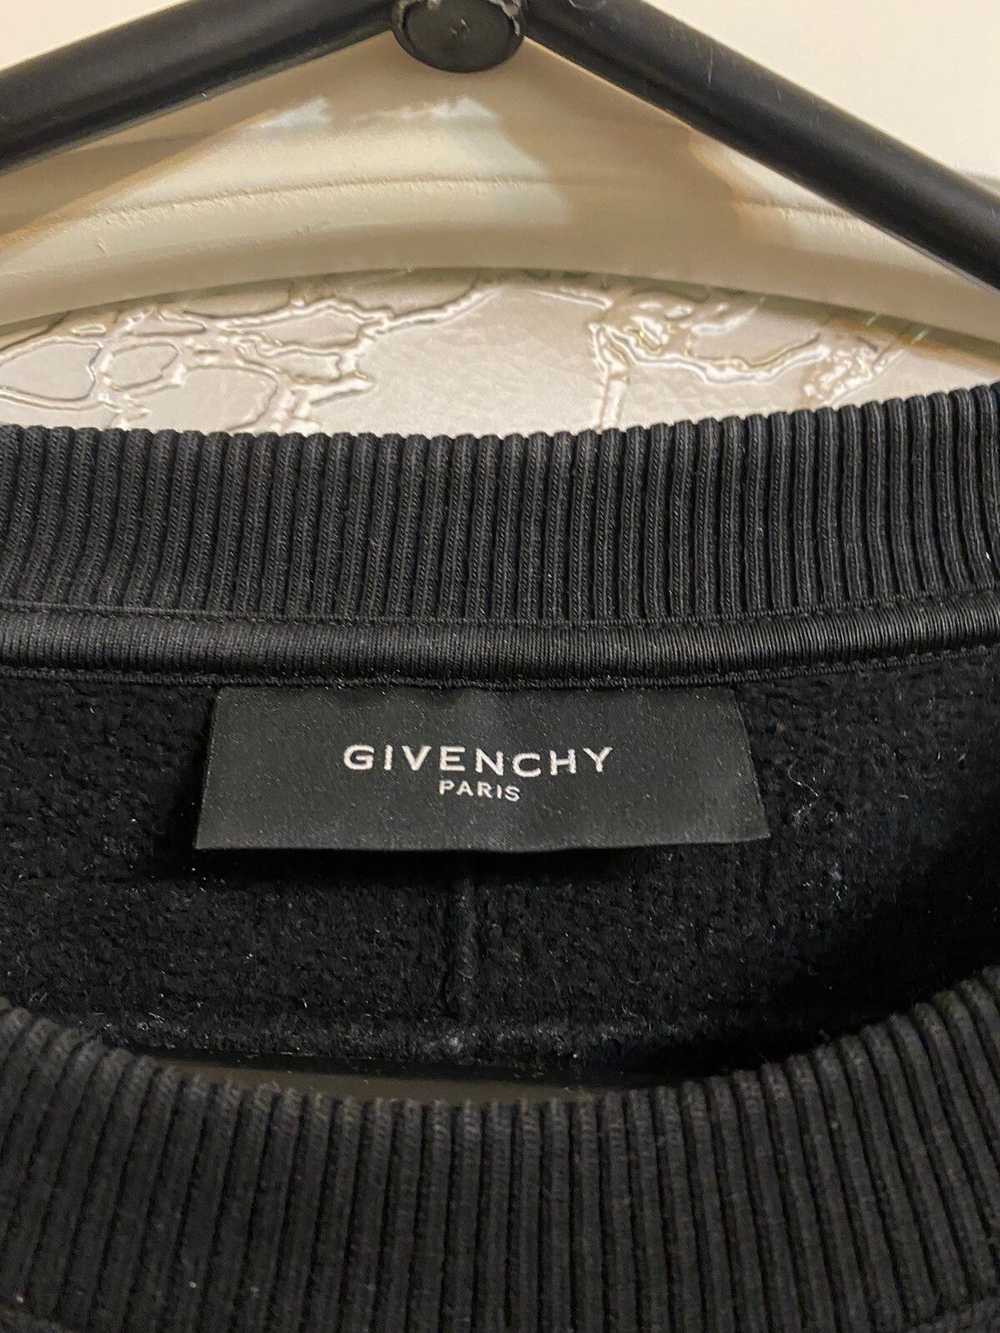 Givenchy FW14 sweatshirt - image 2